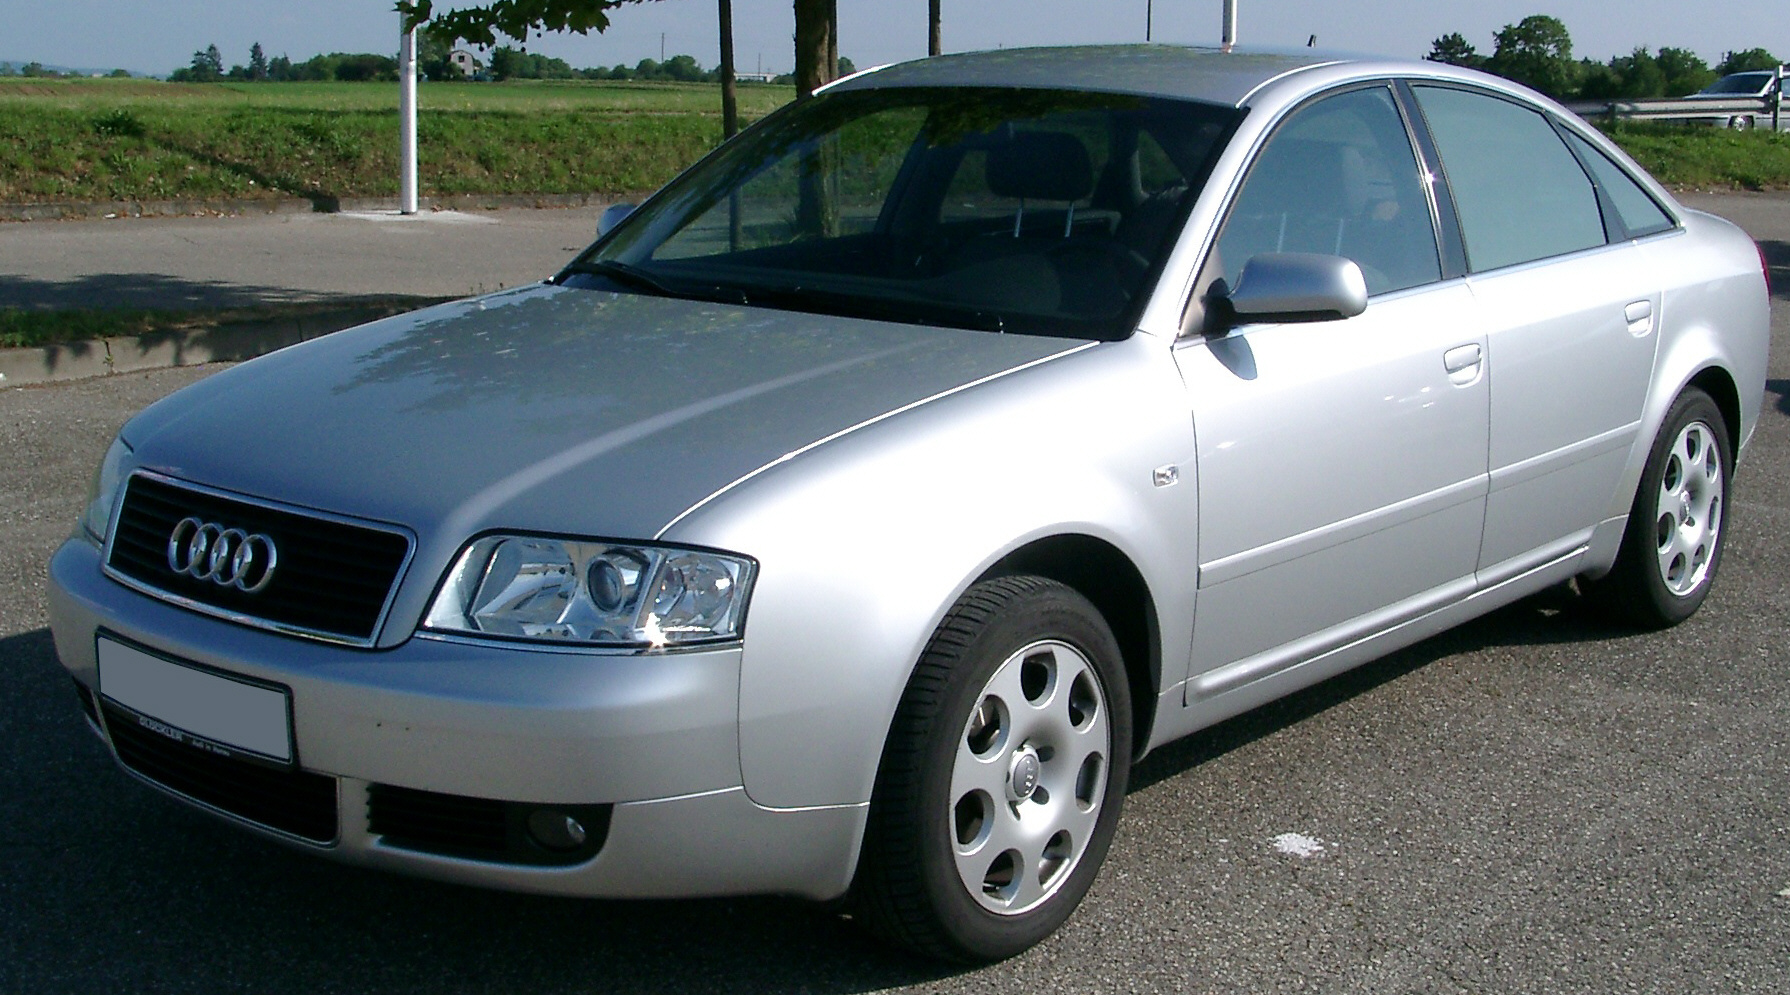 Fichier:Audi A6 C5 front 20070518.jpg — Wikipédia